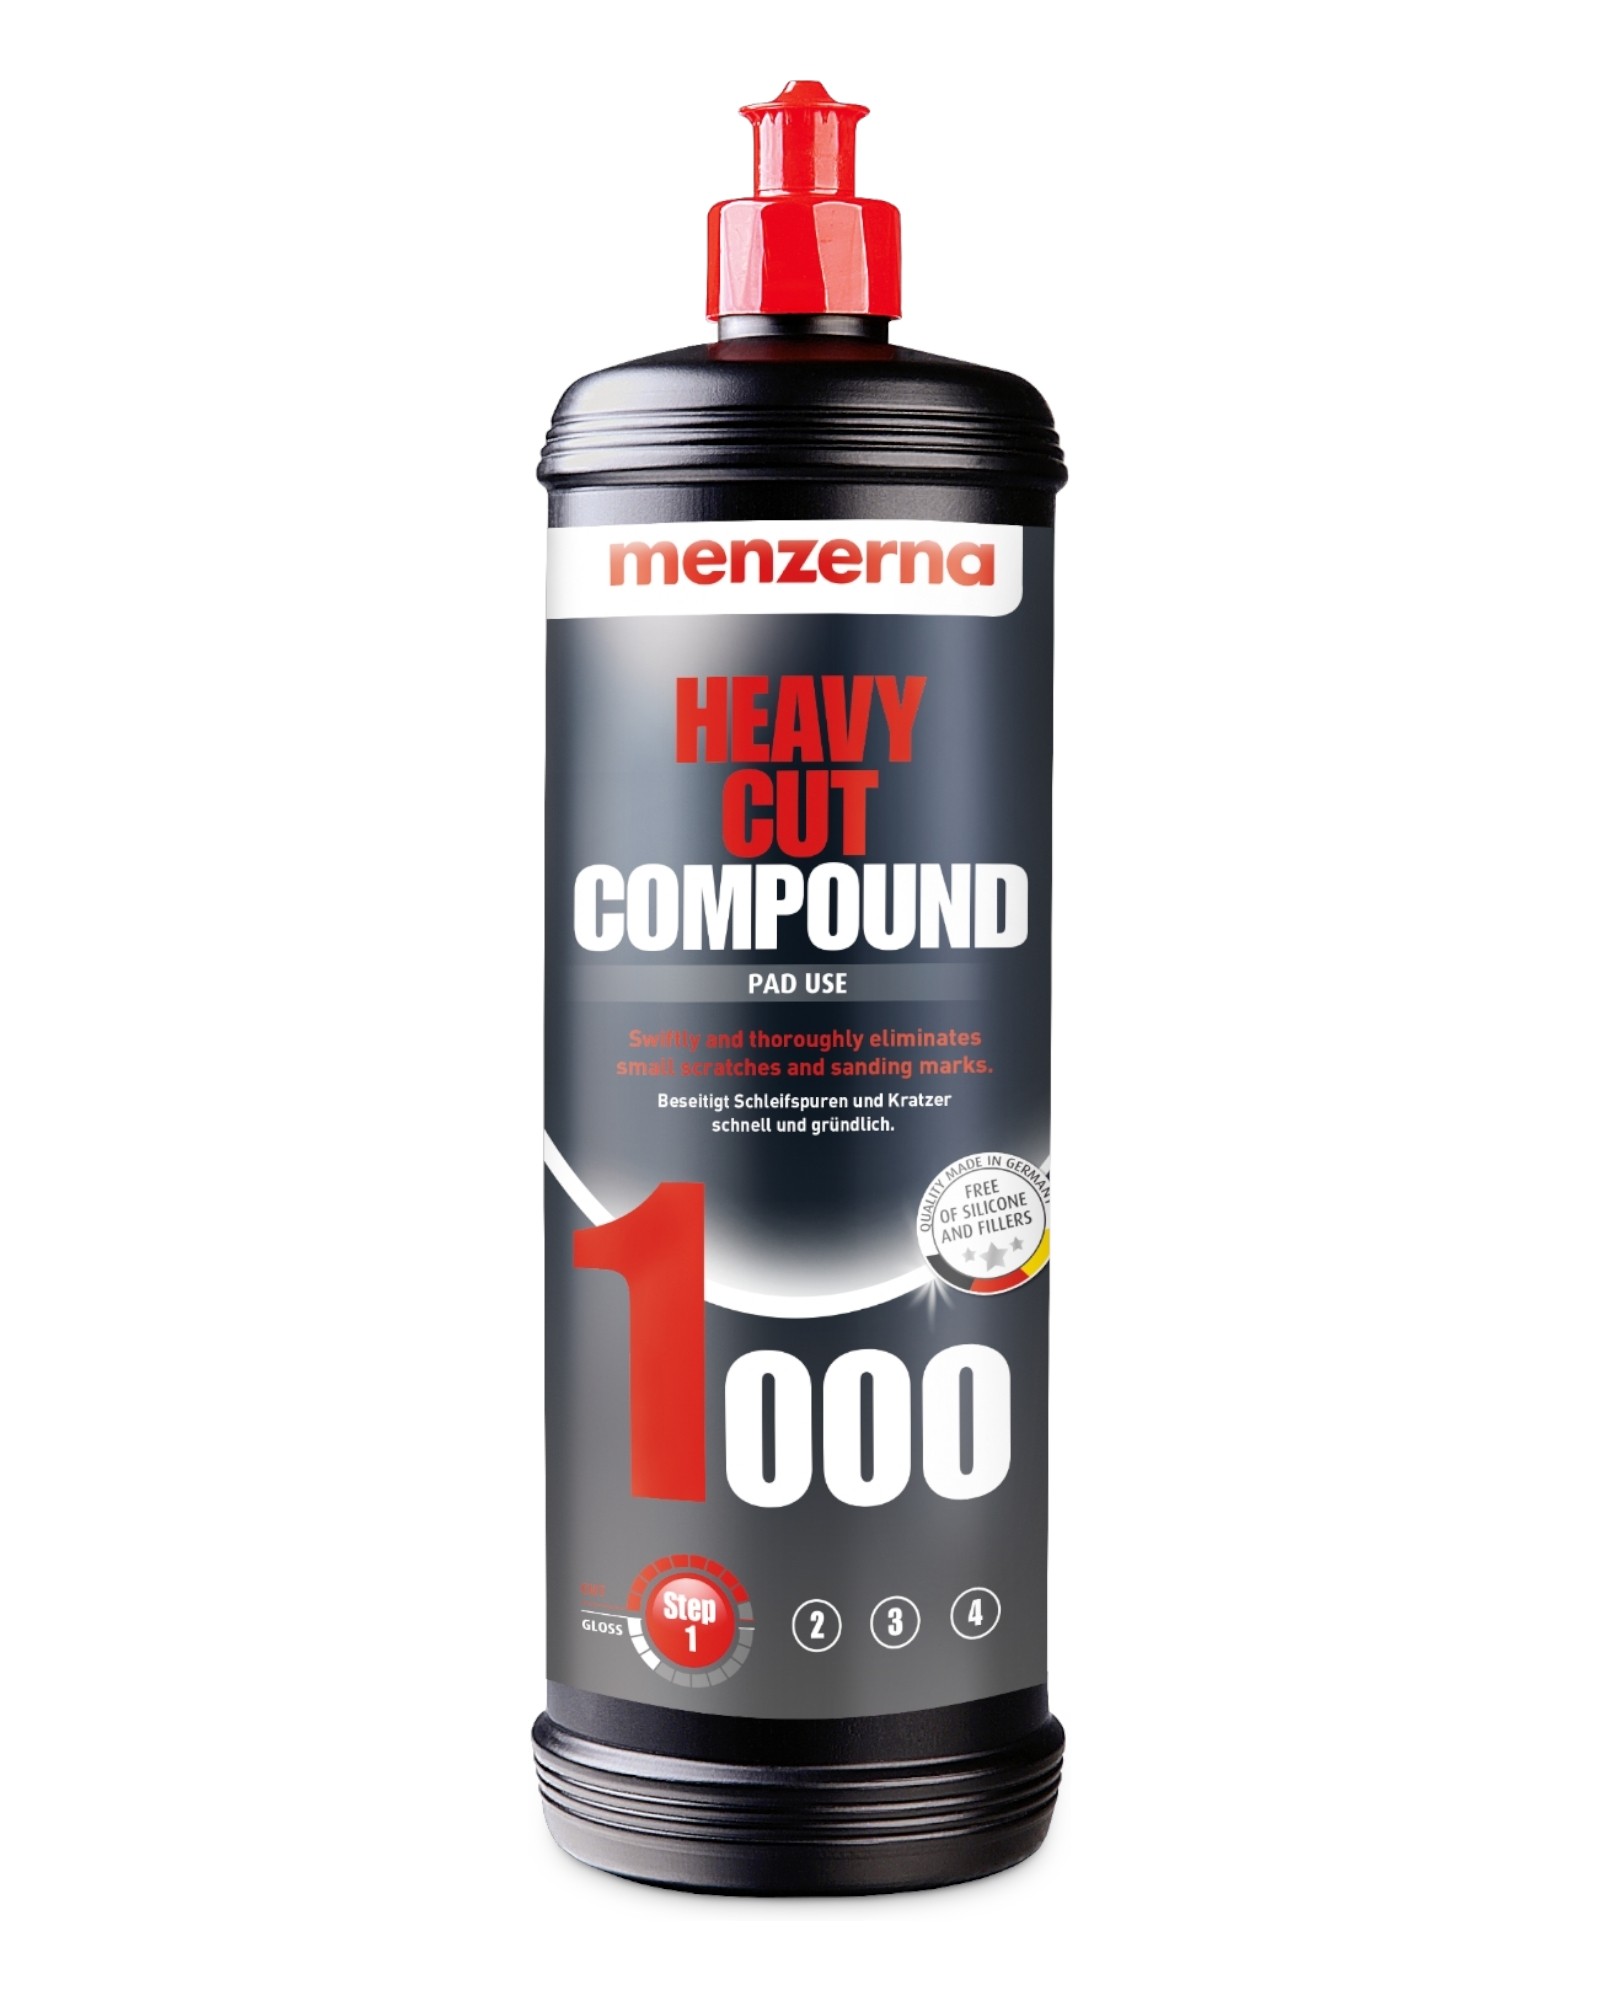 Menzerna Heavy Cut Compound 1000 1kg